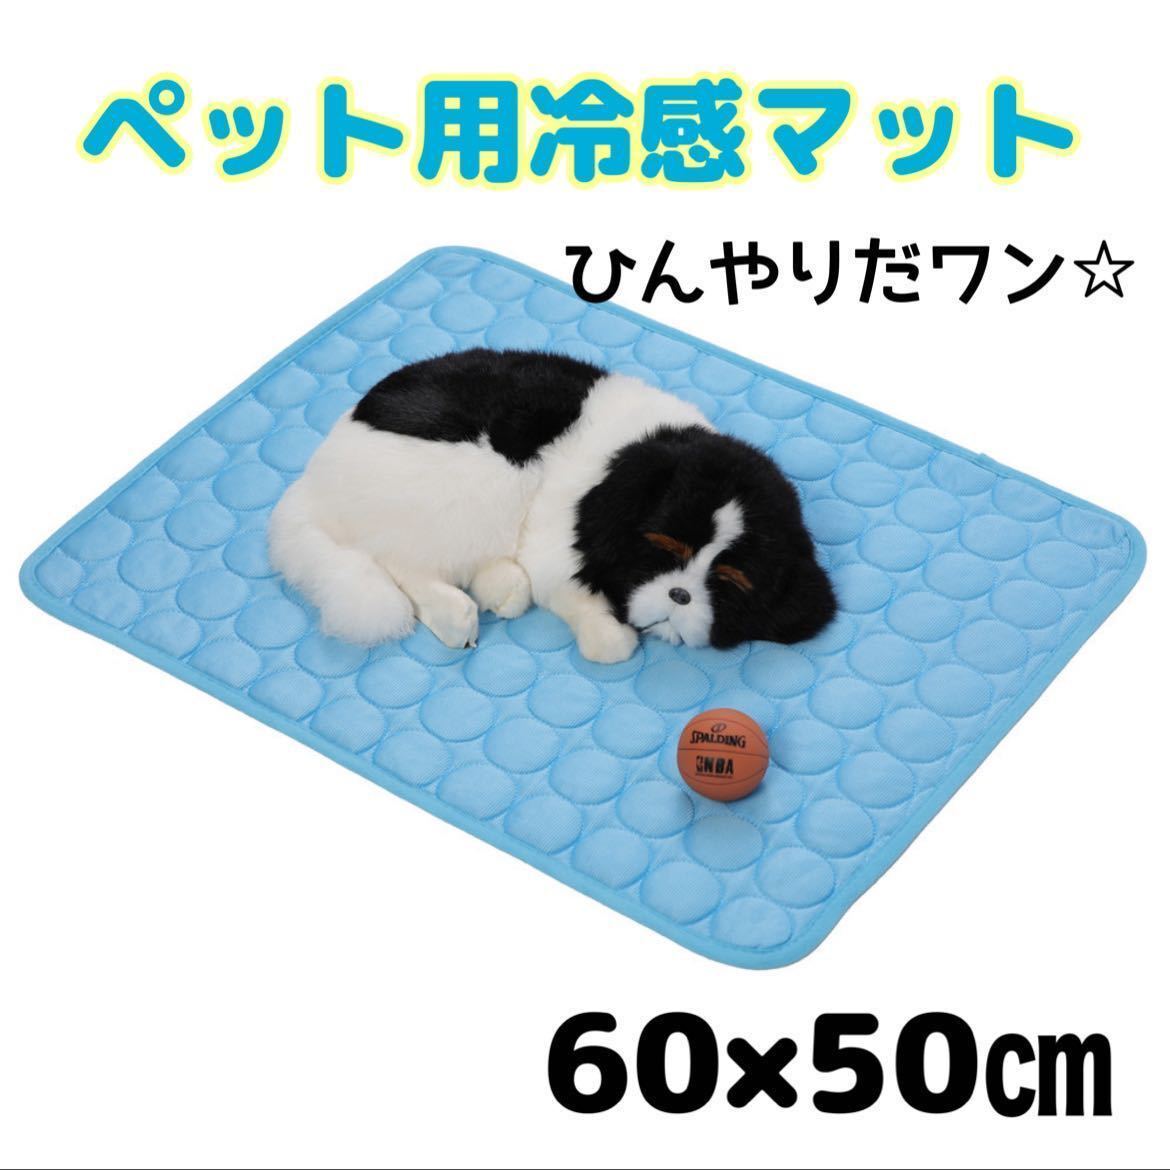 【新品】ペット用 ひんやり 接触冷感 マット 60×50㎝ ブルー 犬猫 小動物 洗濯可能の画像1